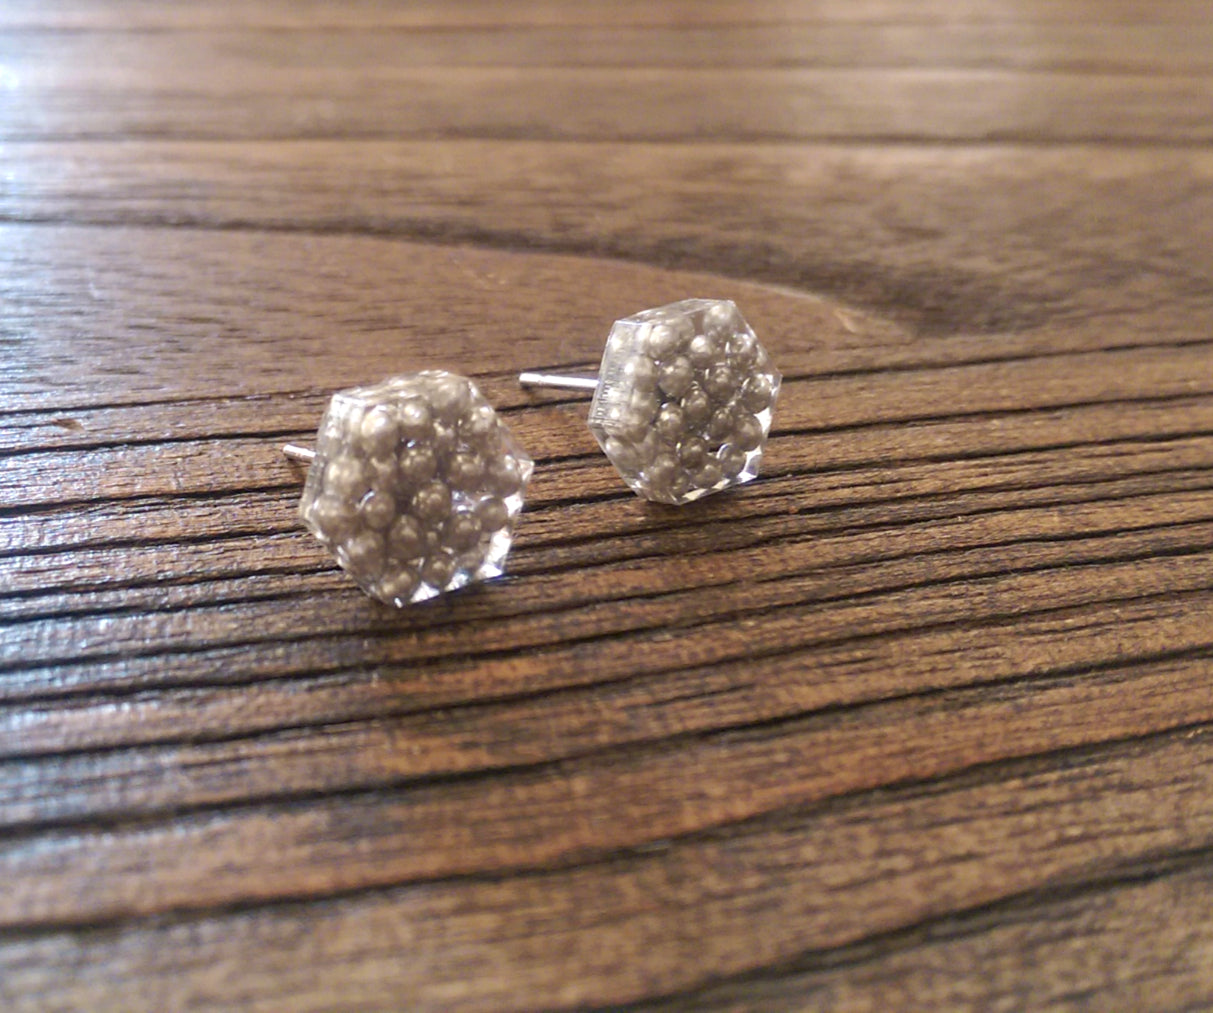 Hexagon Resin Stud Earrings, Silver Earrings. Stainless Steel Stud Earrings. 10mm - Silver and Resin Designs